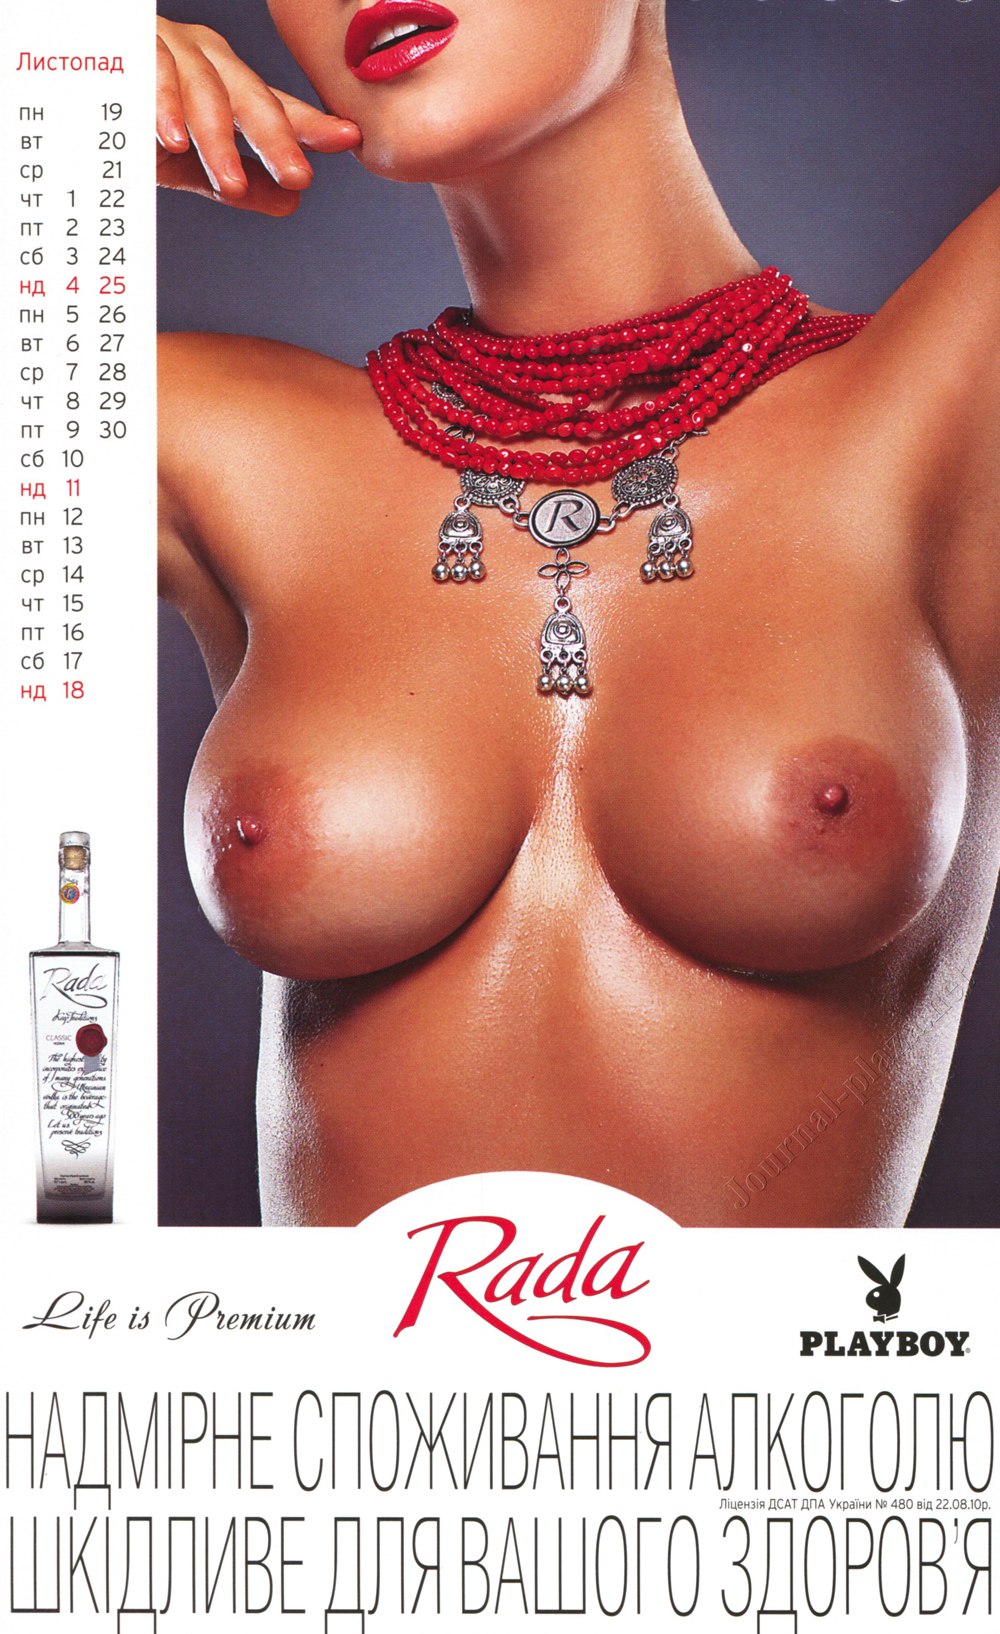 Украинский Playboy-календарь на 2012 год